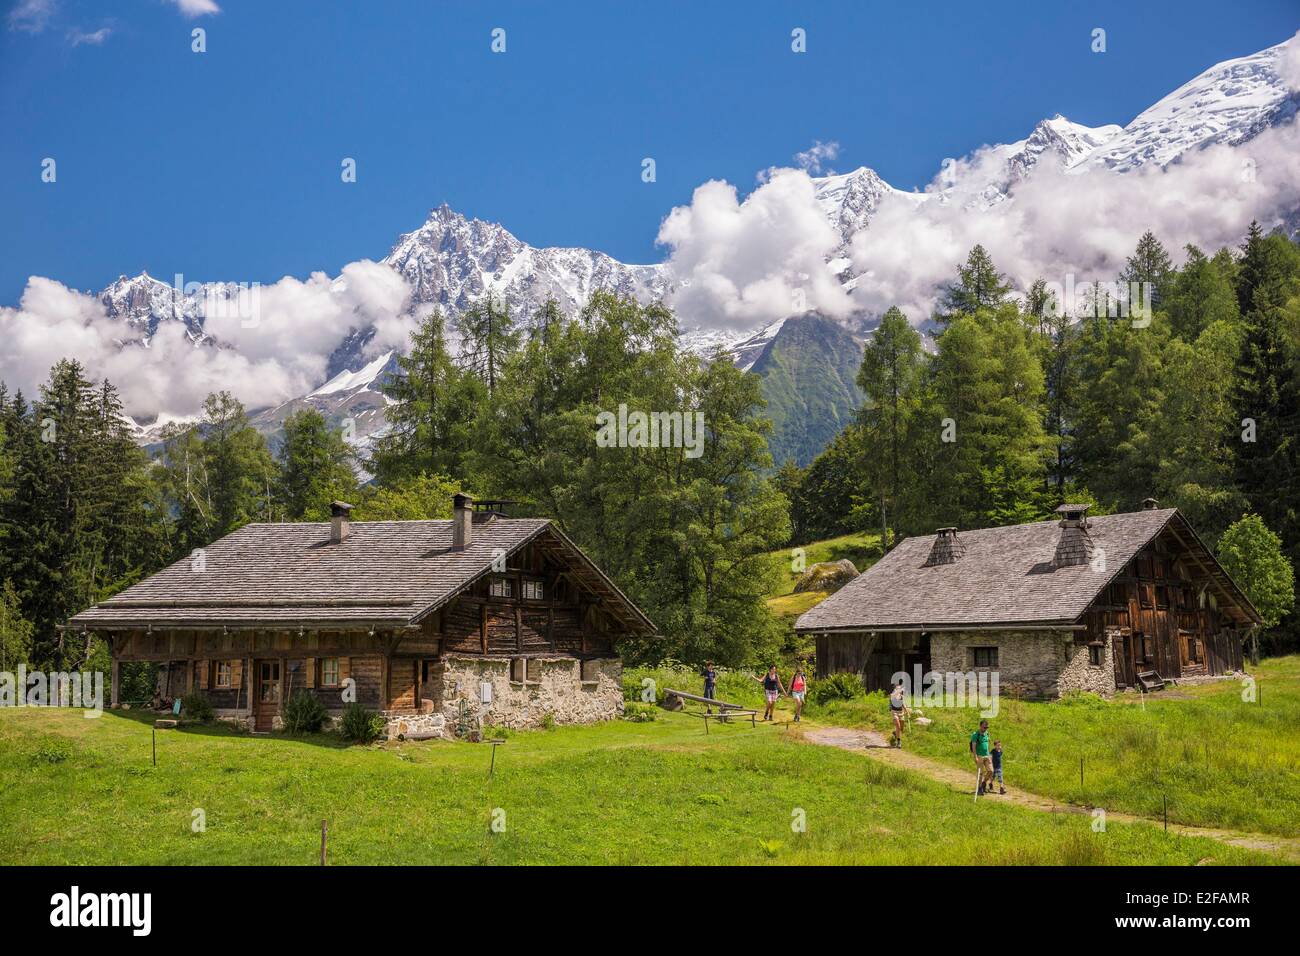 Frankreich Haute Savoie Les Houches Weiler des Hochgebirges Weiden des Charousse mit Blick auf das Massif du Mont Blanc Montblanc du Stockfoto